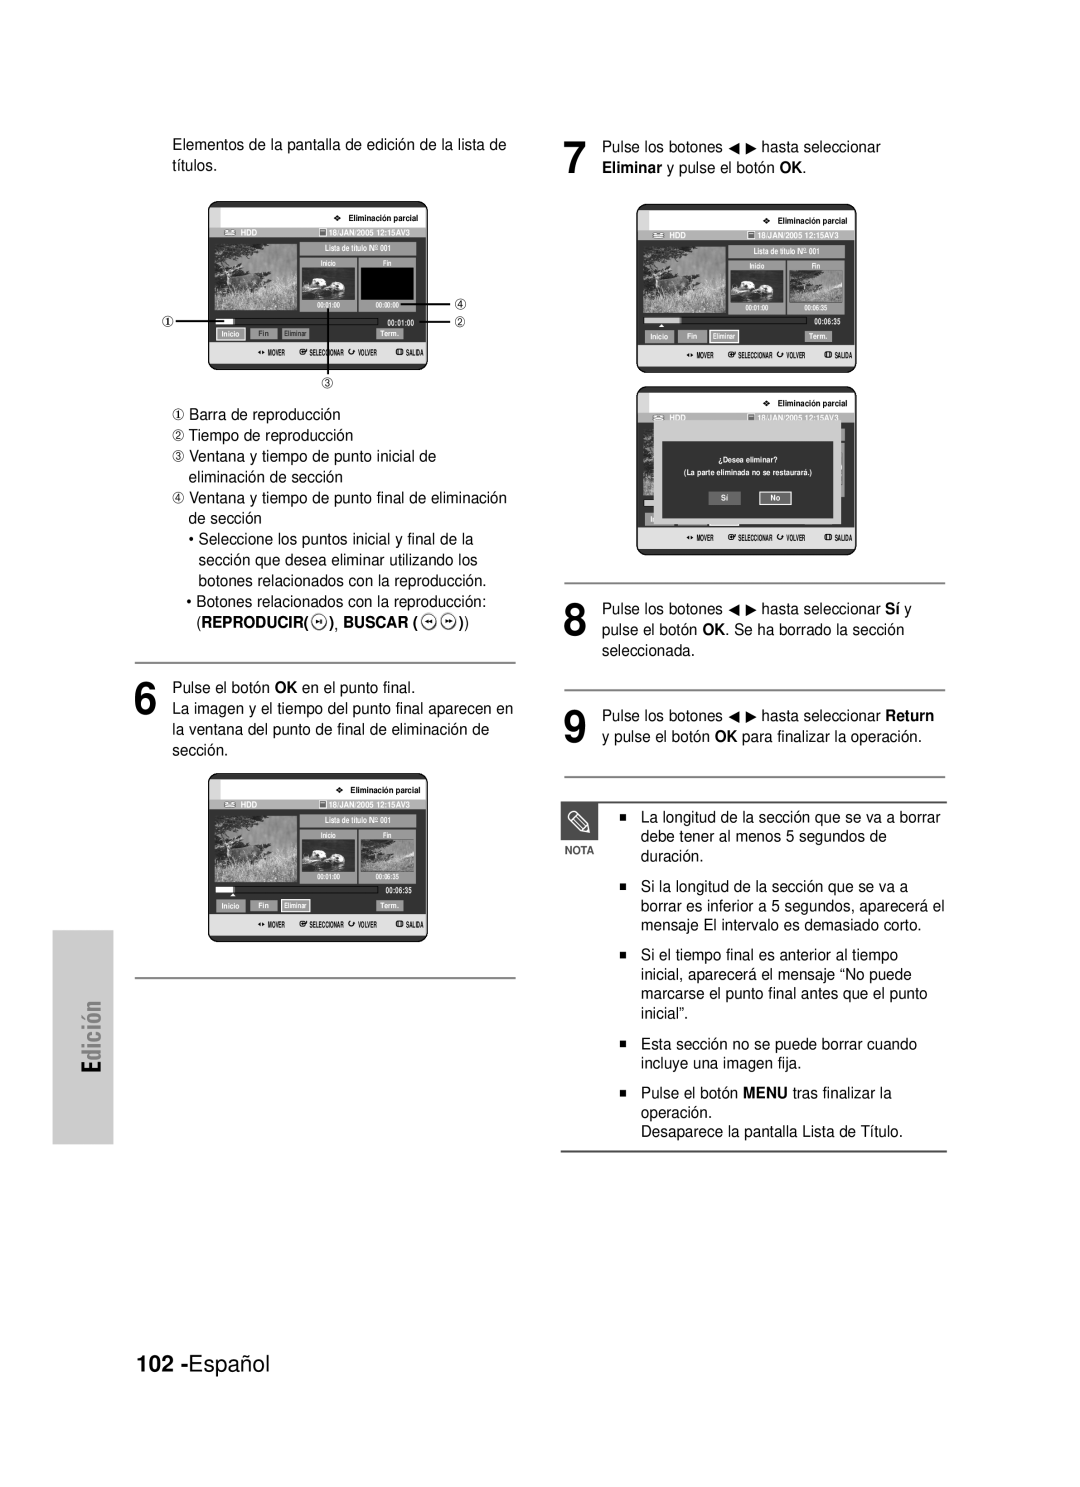 Samsung DVD-HR725/SED, DVD-HR725/XEG Español, Edición, Reproducir , Buscar, Pulse el botón OK en el punto final, sección 